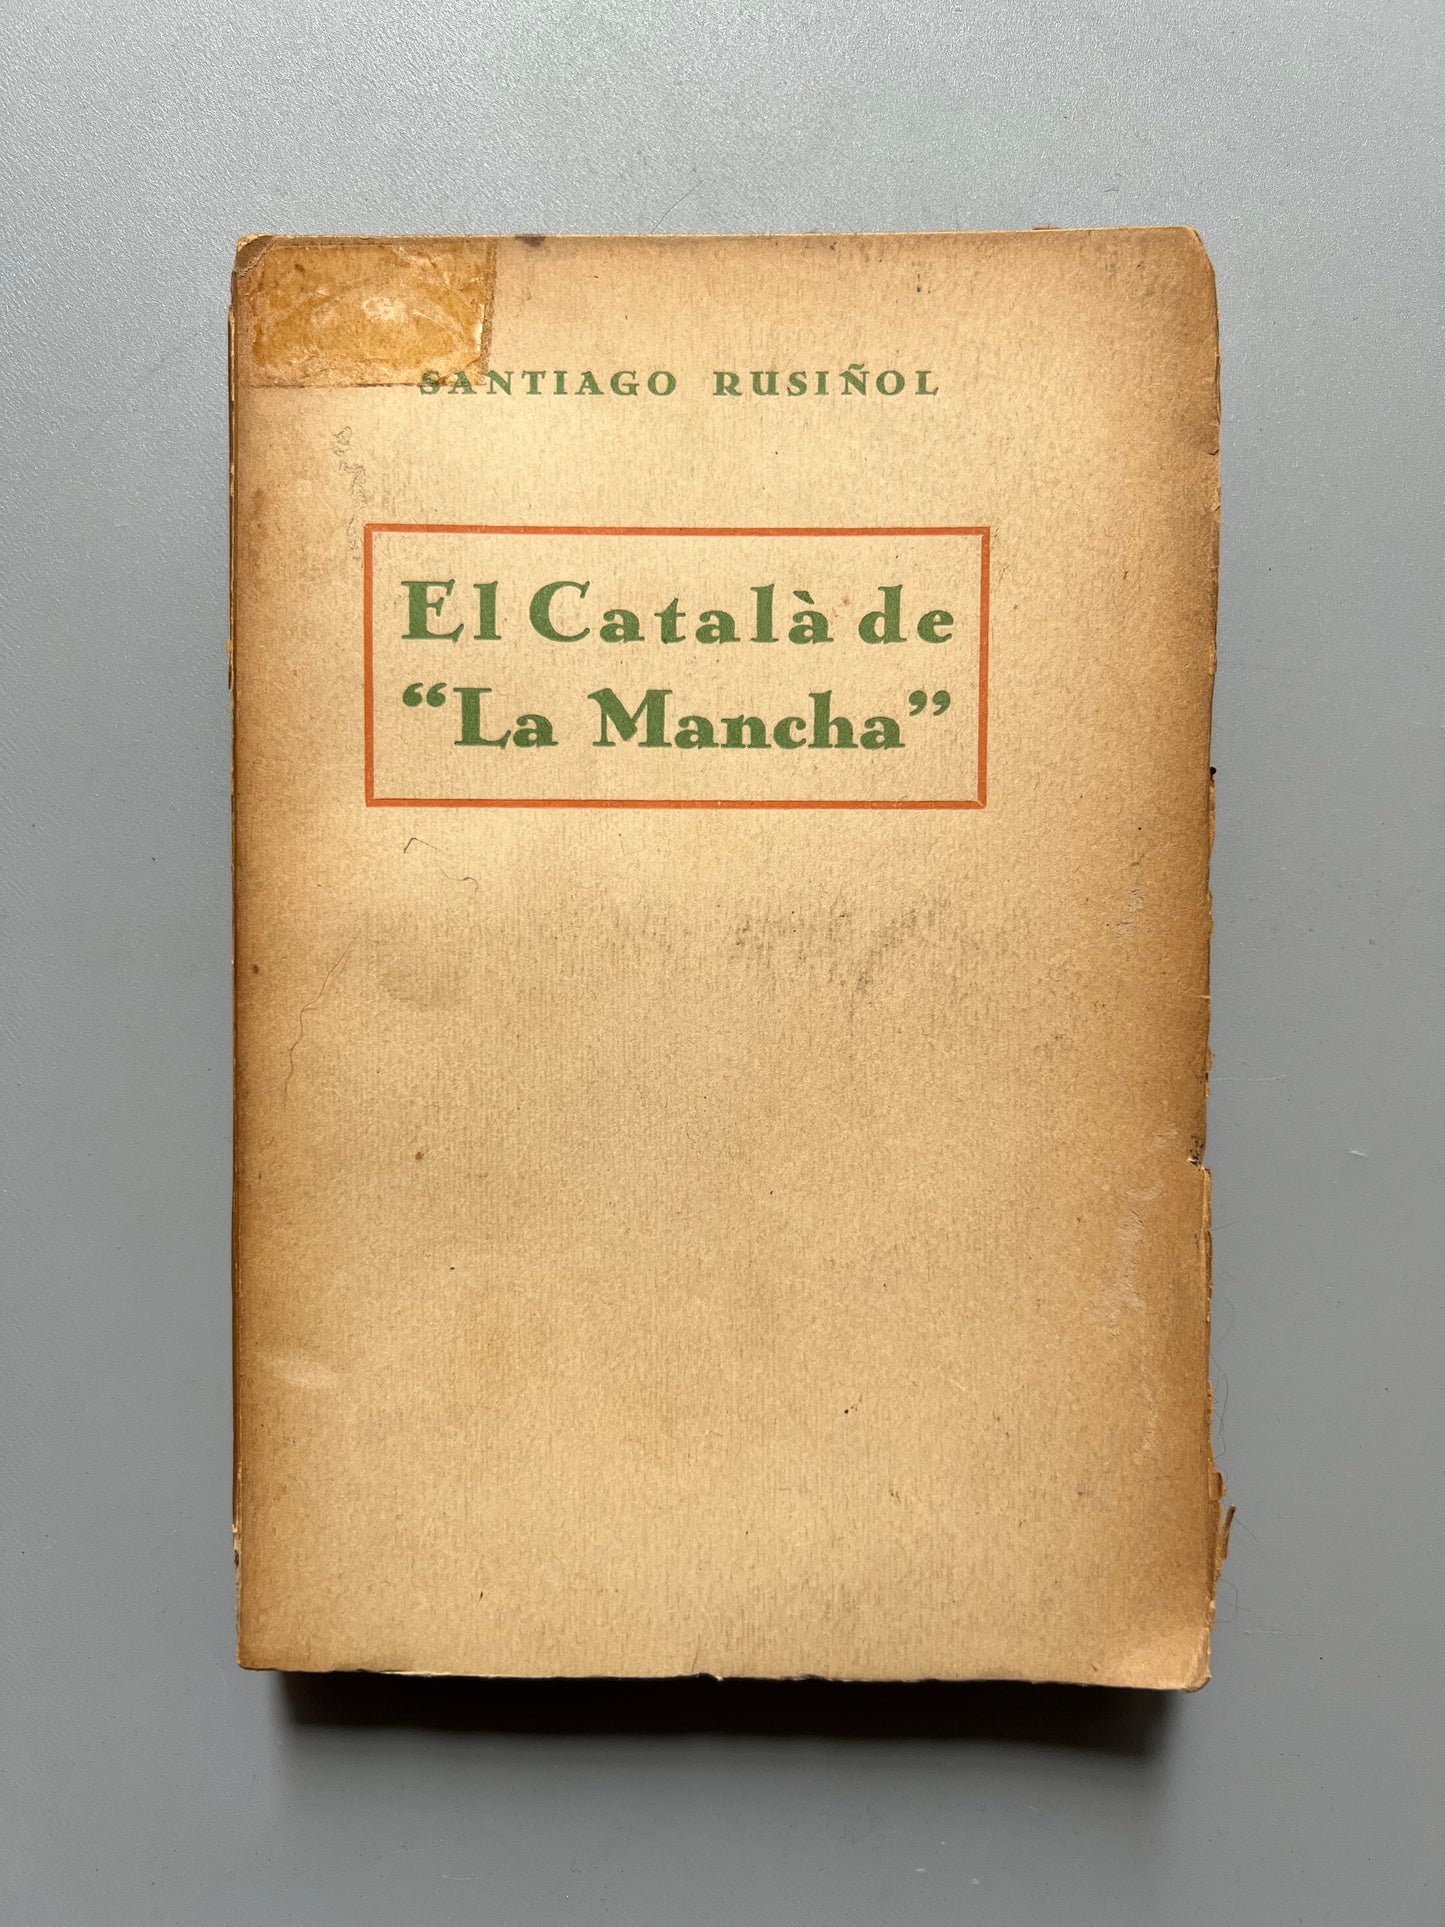 El català de la Mancha, Santiago Rusiñol - Antonio Lopez llibreter, ca. 1910